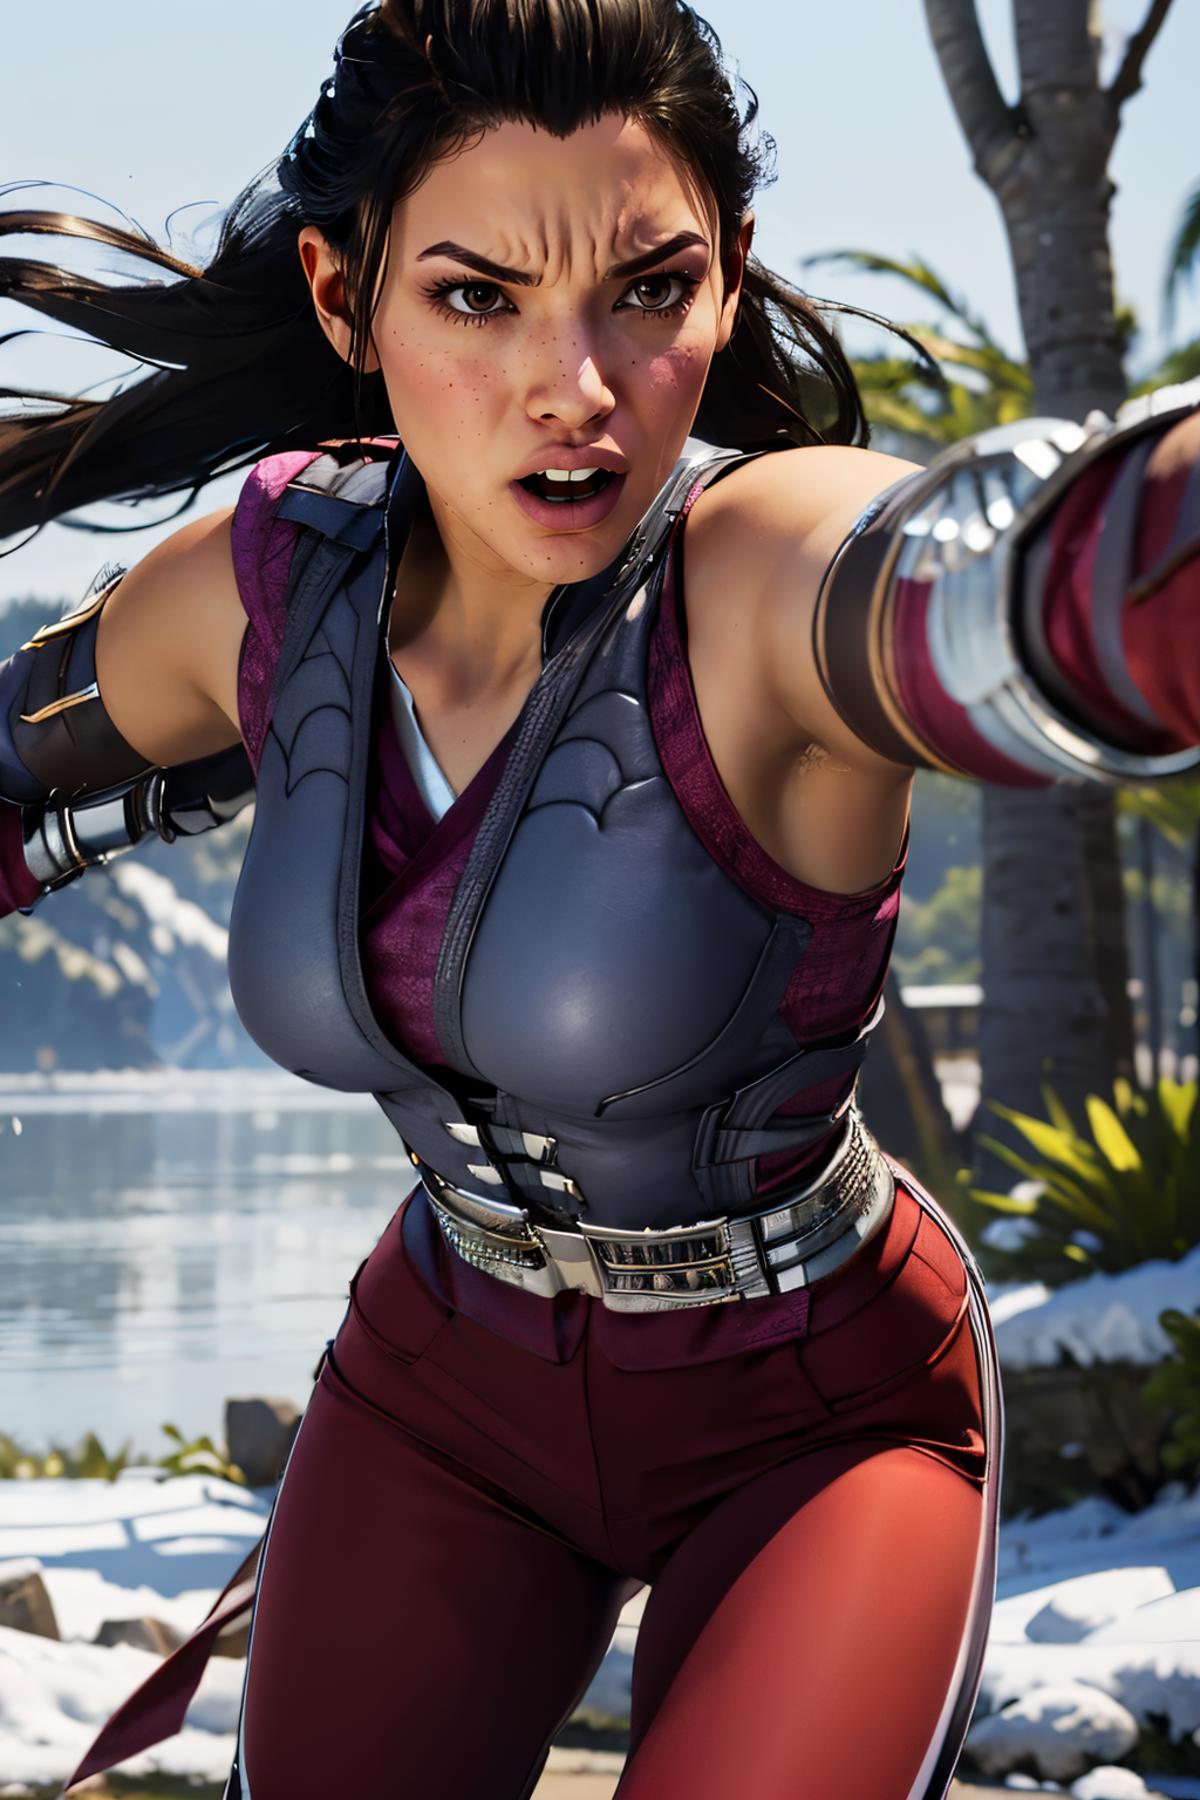 Li Mei - Mortal Kombat (MK1) image by wikkitikki